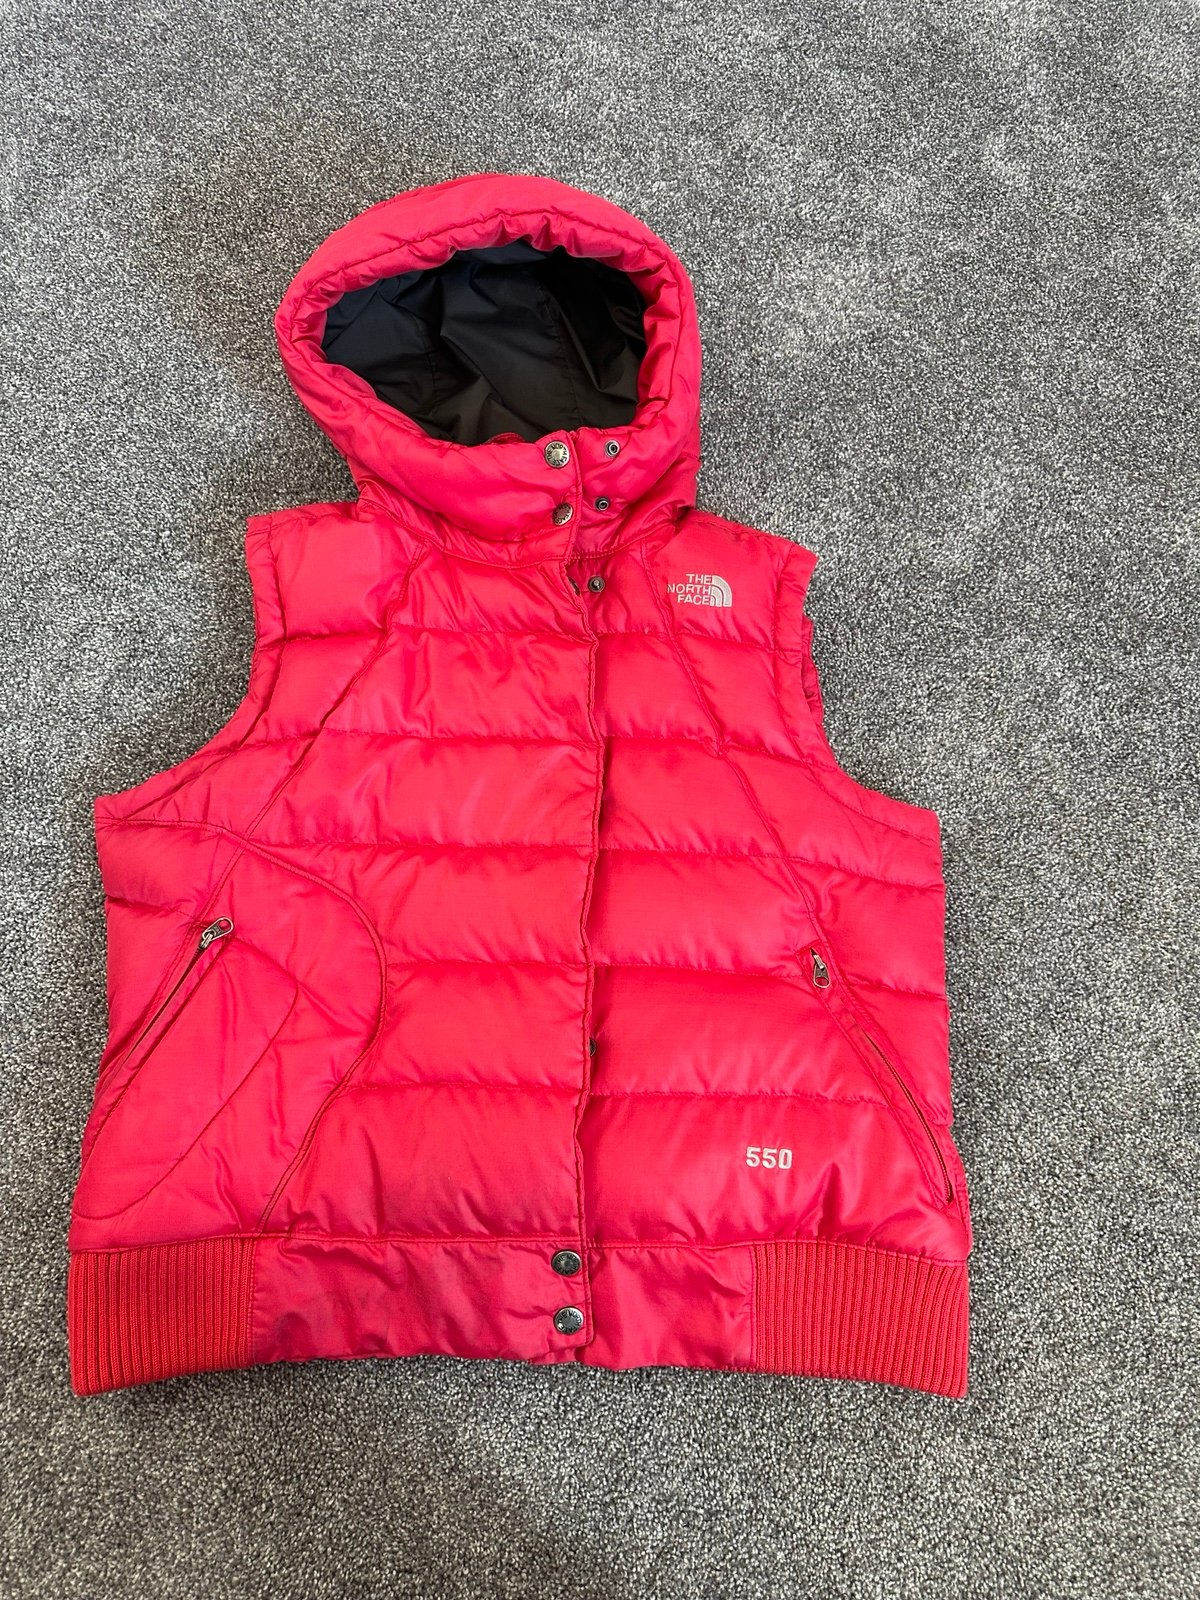 Women’’s The North Face 550 pink vest size XL qgKGSZBM2